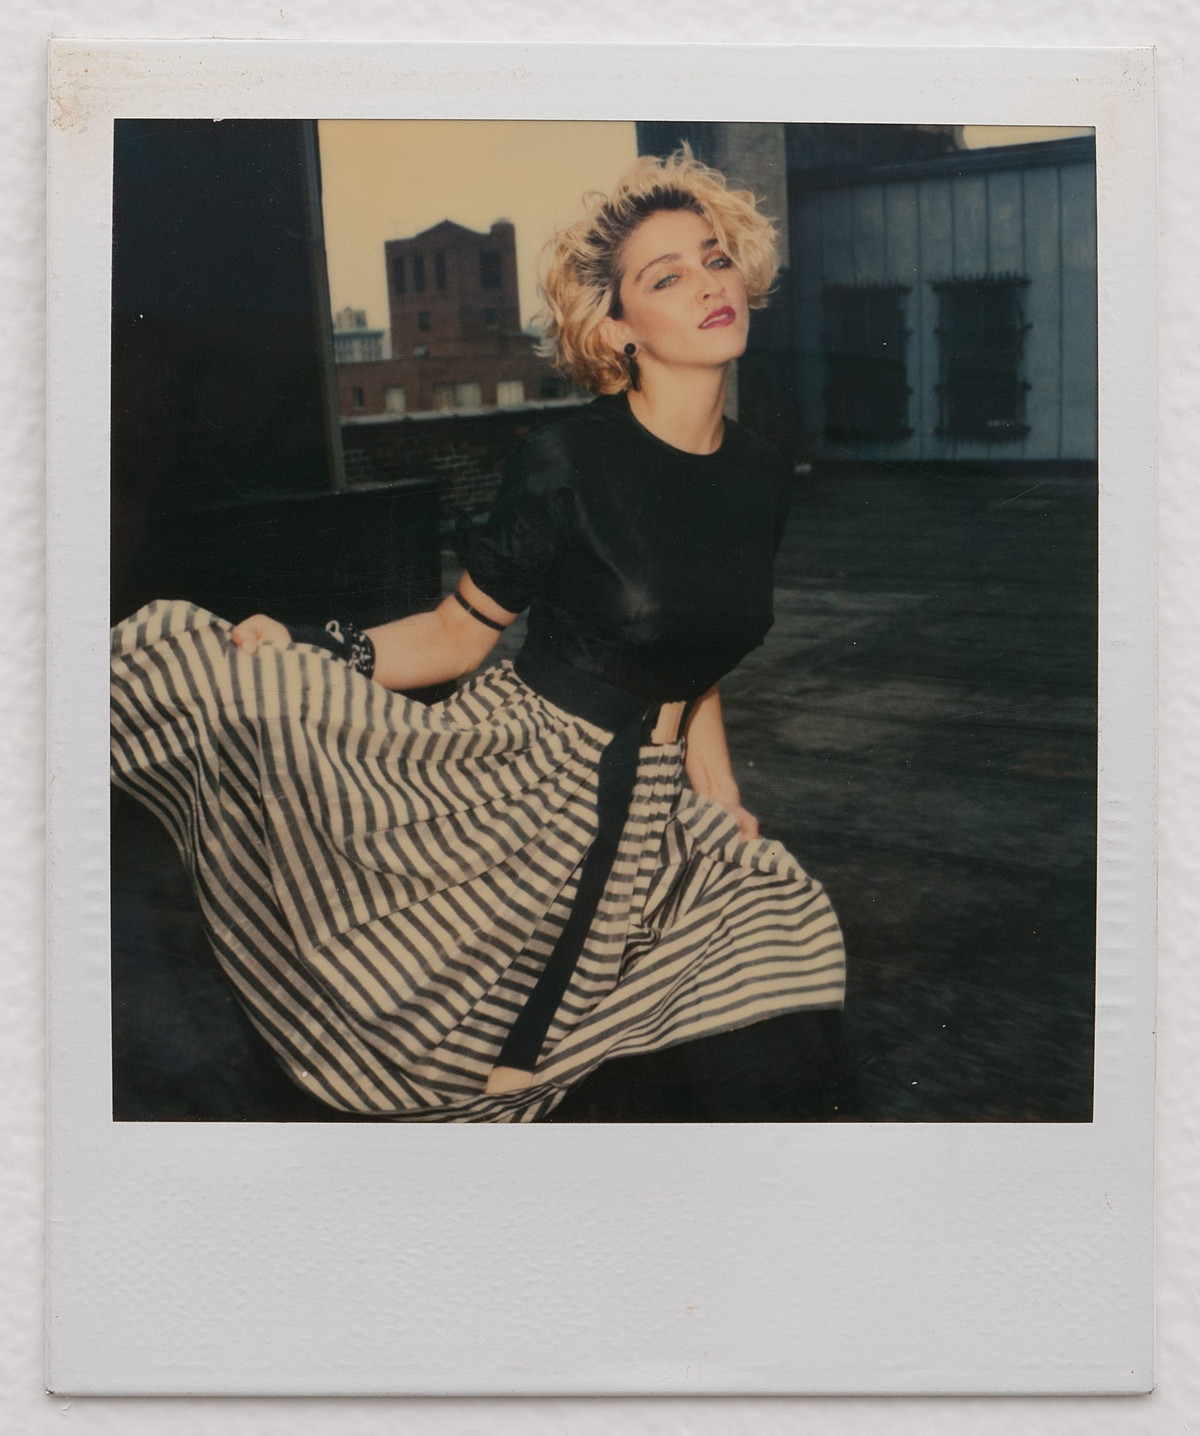 Мадонна на пороге славы в полароидных фотографиях 1983 года Ричарда Кормана 16